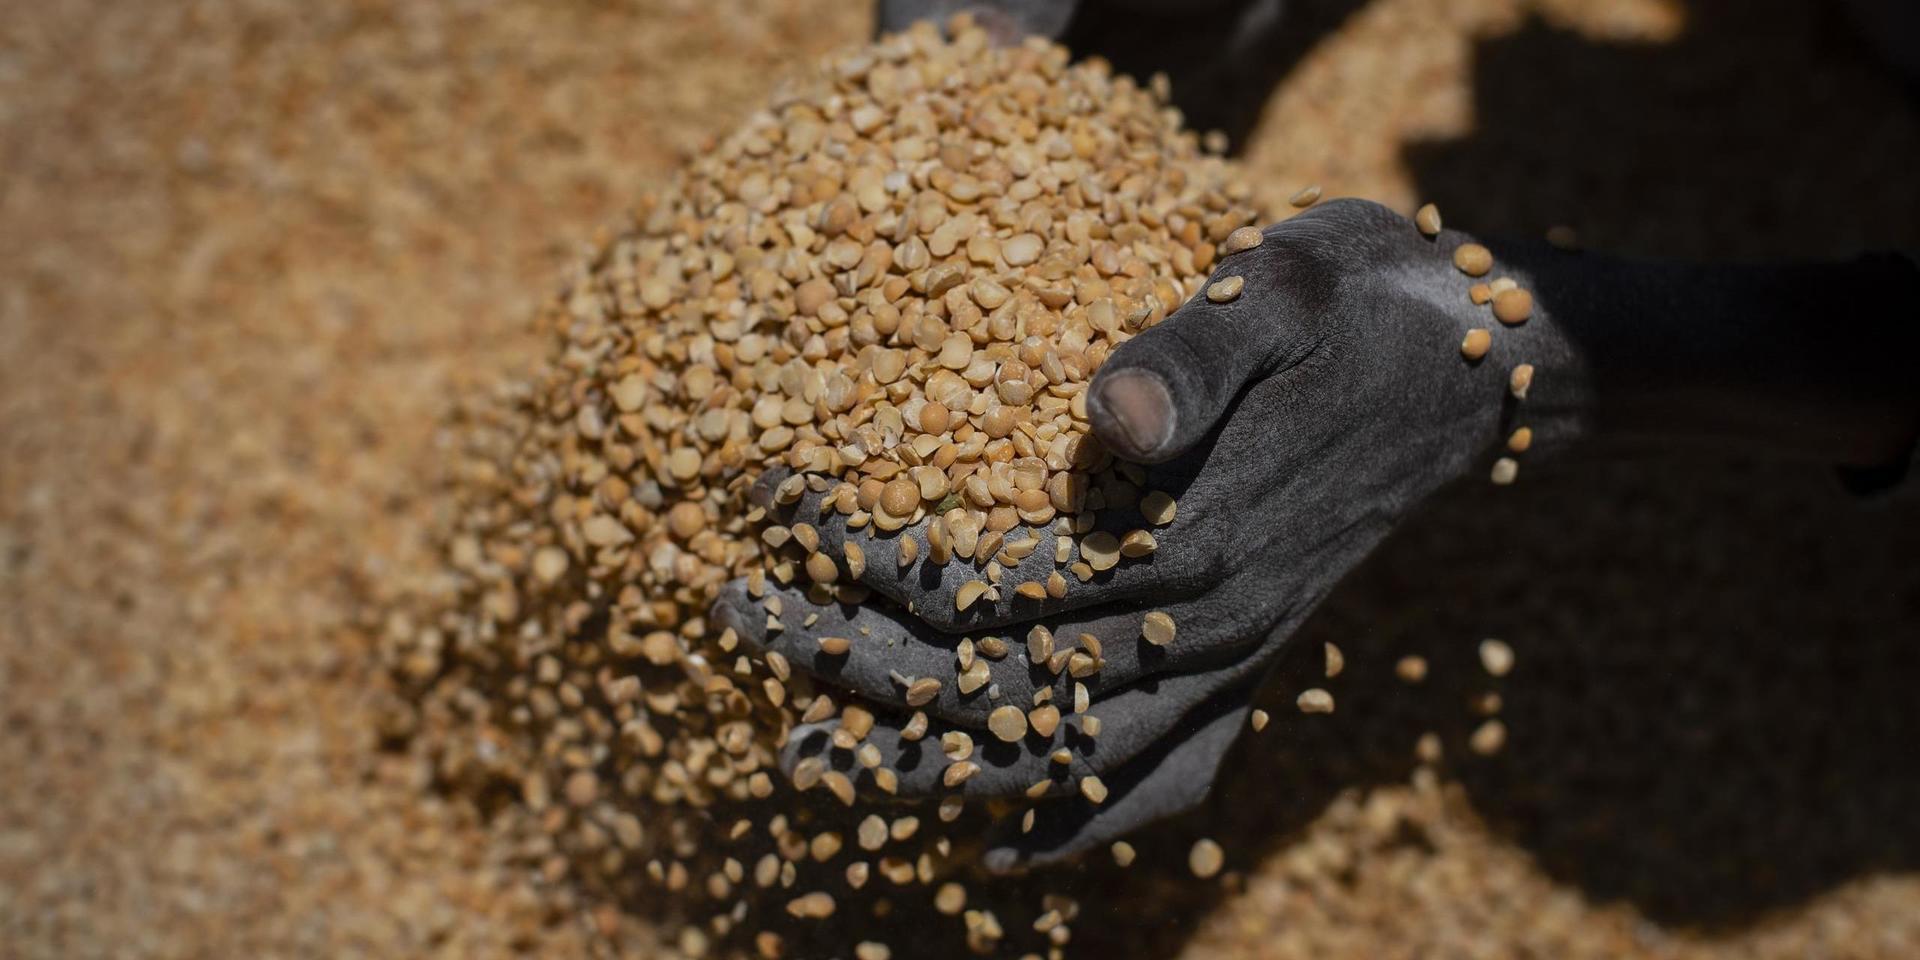 FN har larmat om att hundratusentals människor lider av hungersnöd i det konflikthärjade Tigray i Etiopien.